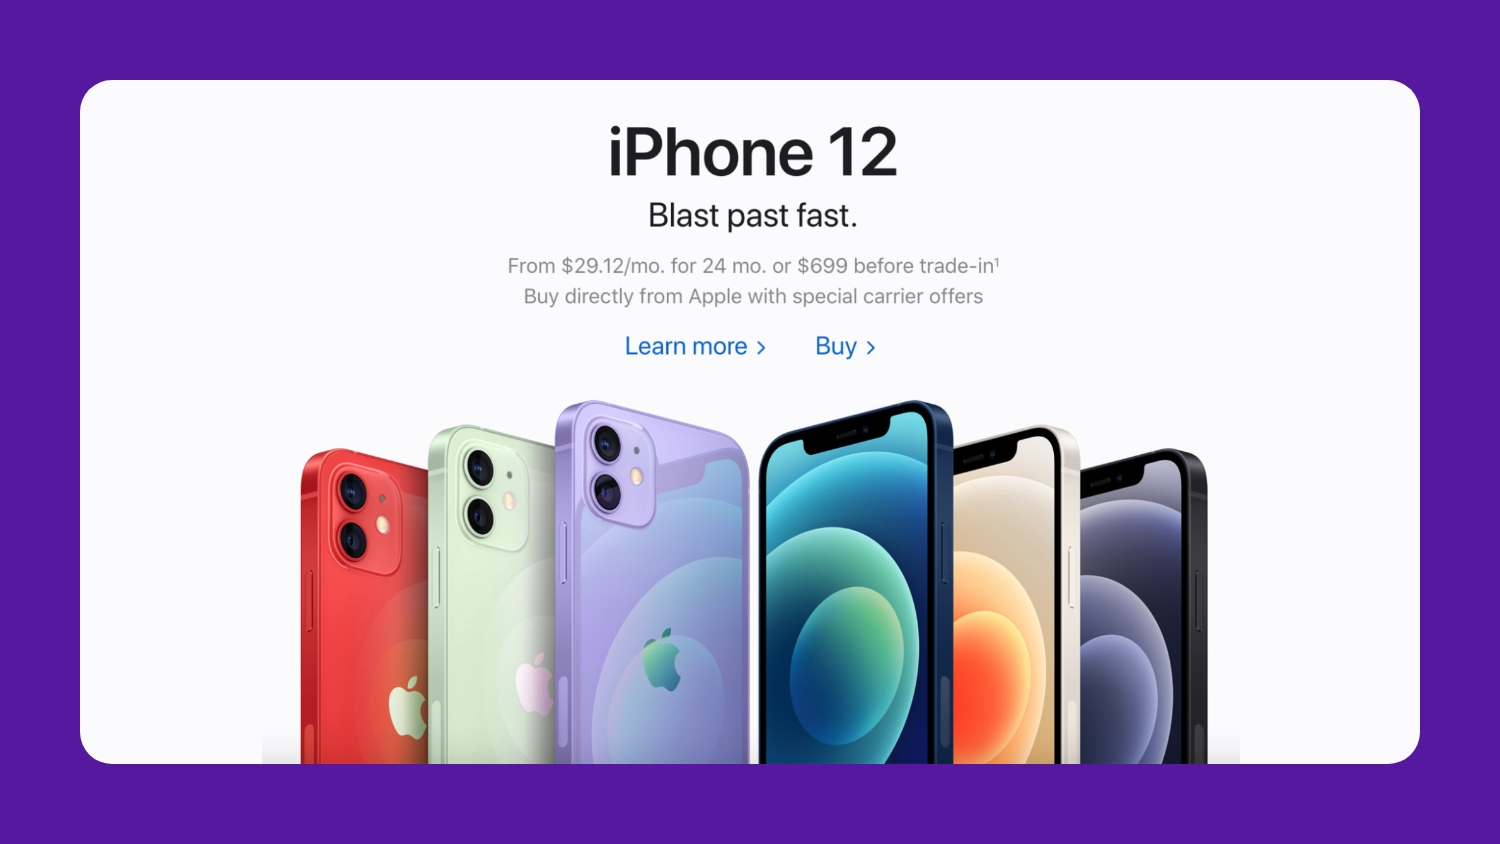 Apple iPhone 12 US homepage version